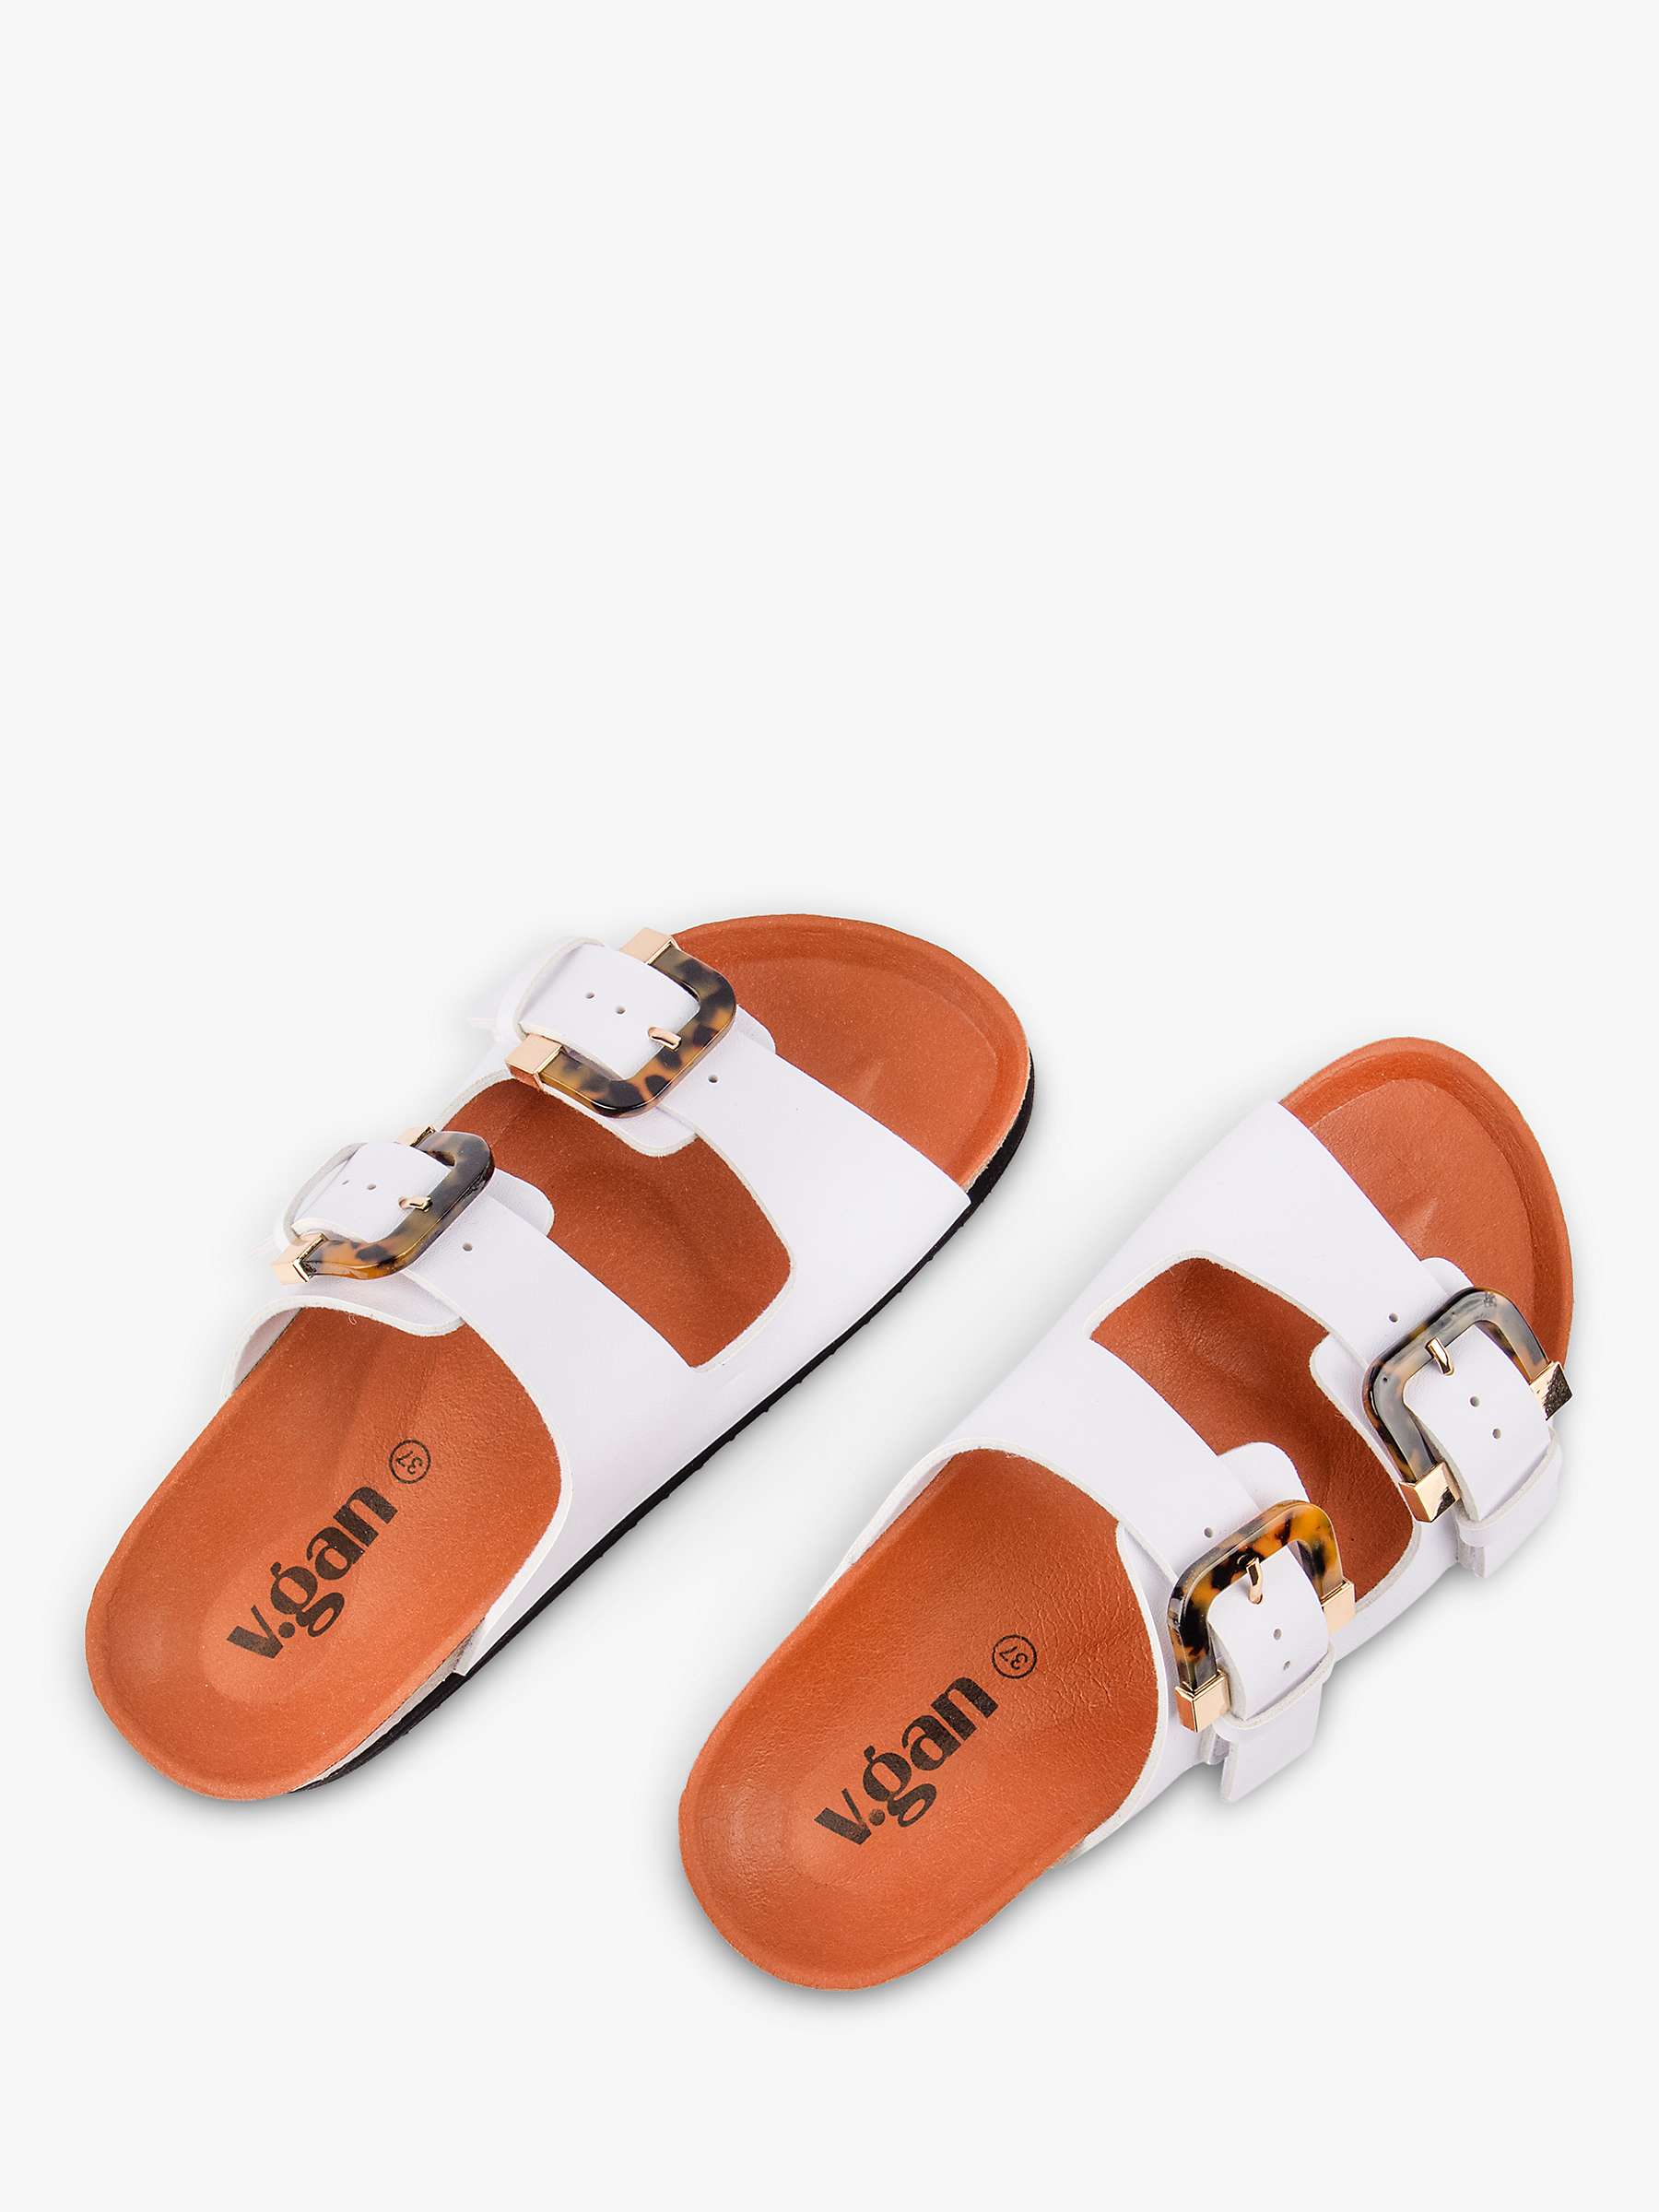 Buy V.GAN Vegan Plum Tortoiseshell Double Strap Footbed Sandals Online at johnlewis.com